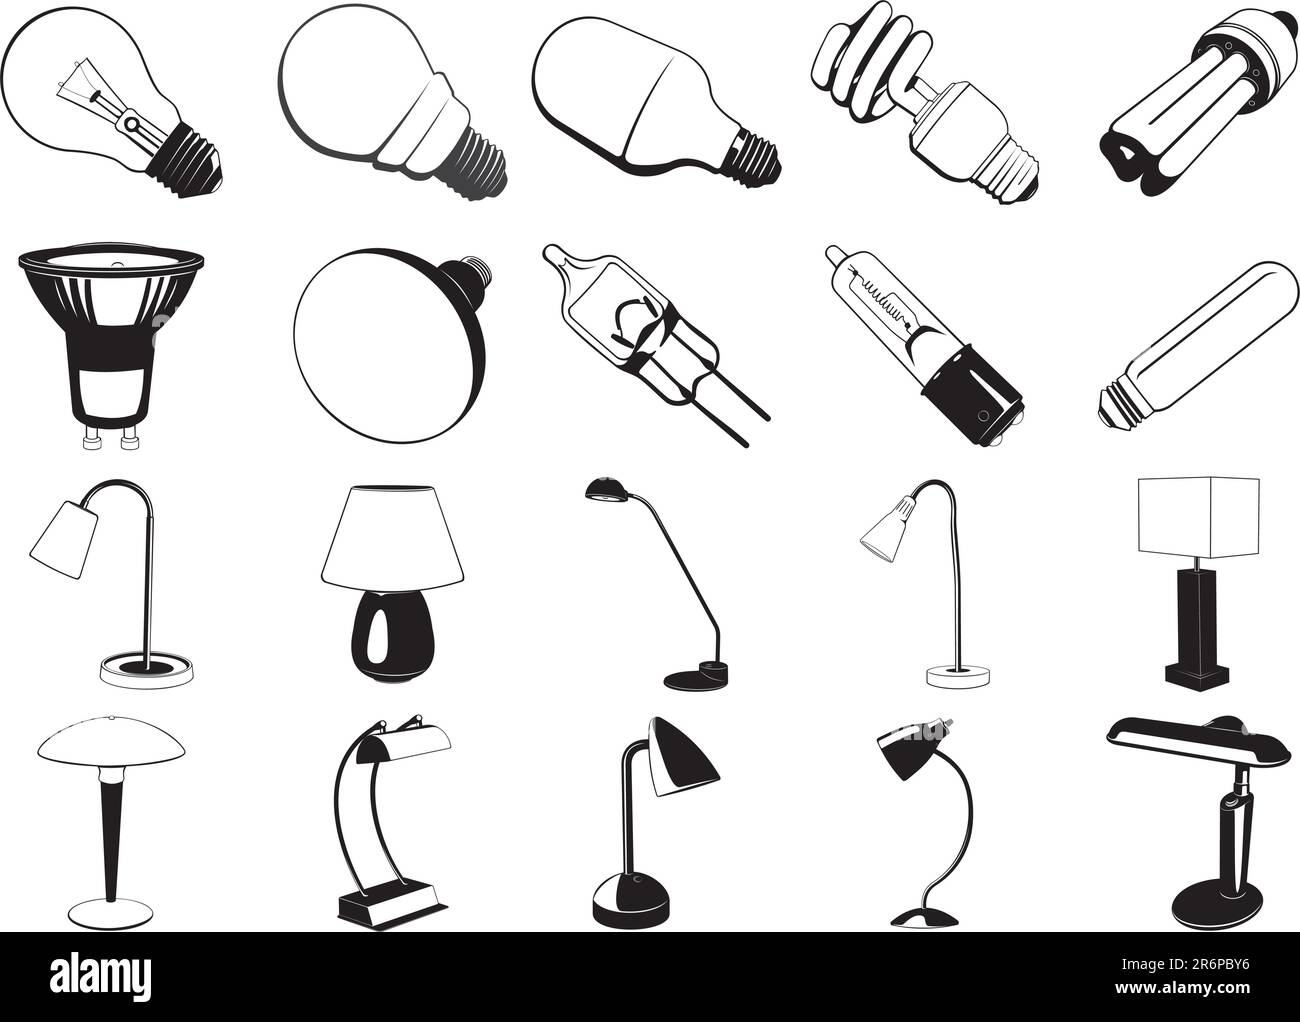 Raccolta di illustrazioni EPS vettoriali lisce di varie apparecchiature di illuminazione Illustrazione Vettoriale